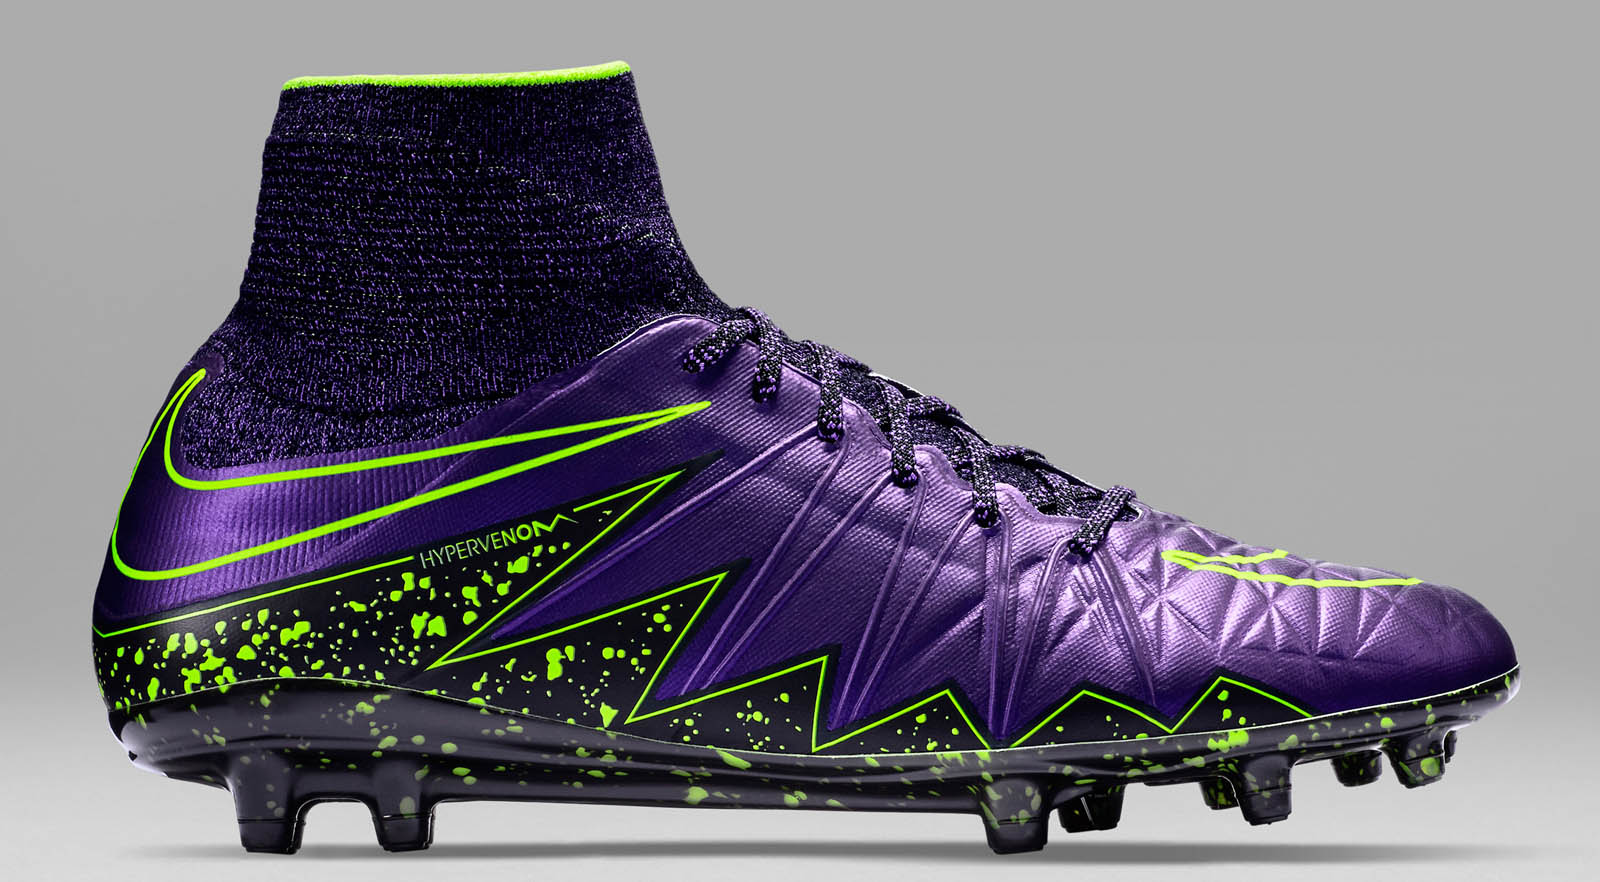 Opwekking wonder Gestaag Purple Nike Hypervenom 2 2015-2016 Boots Released - Footy Headlines